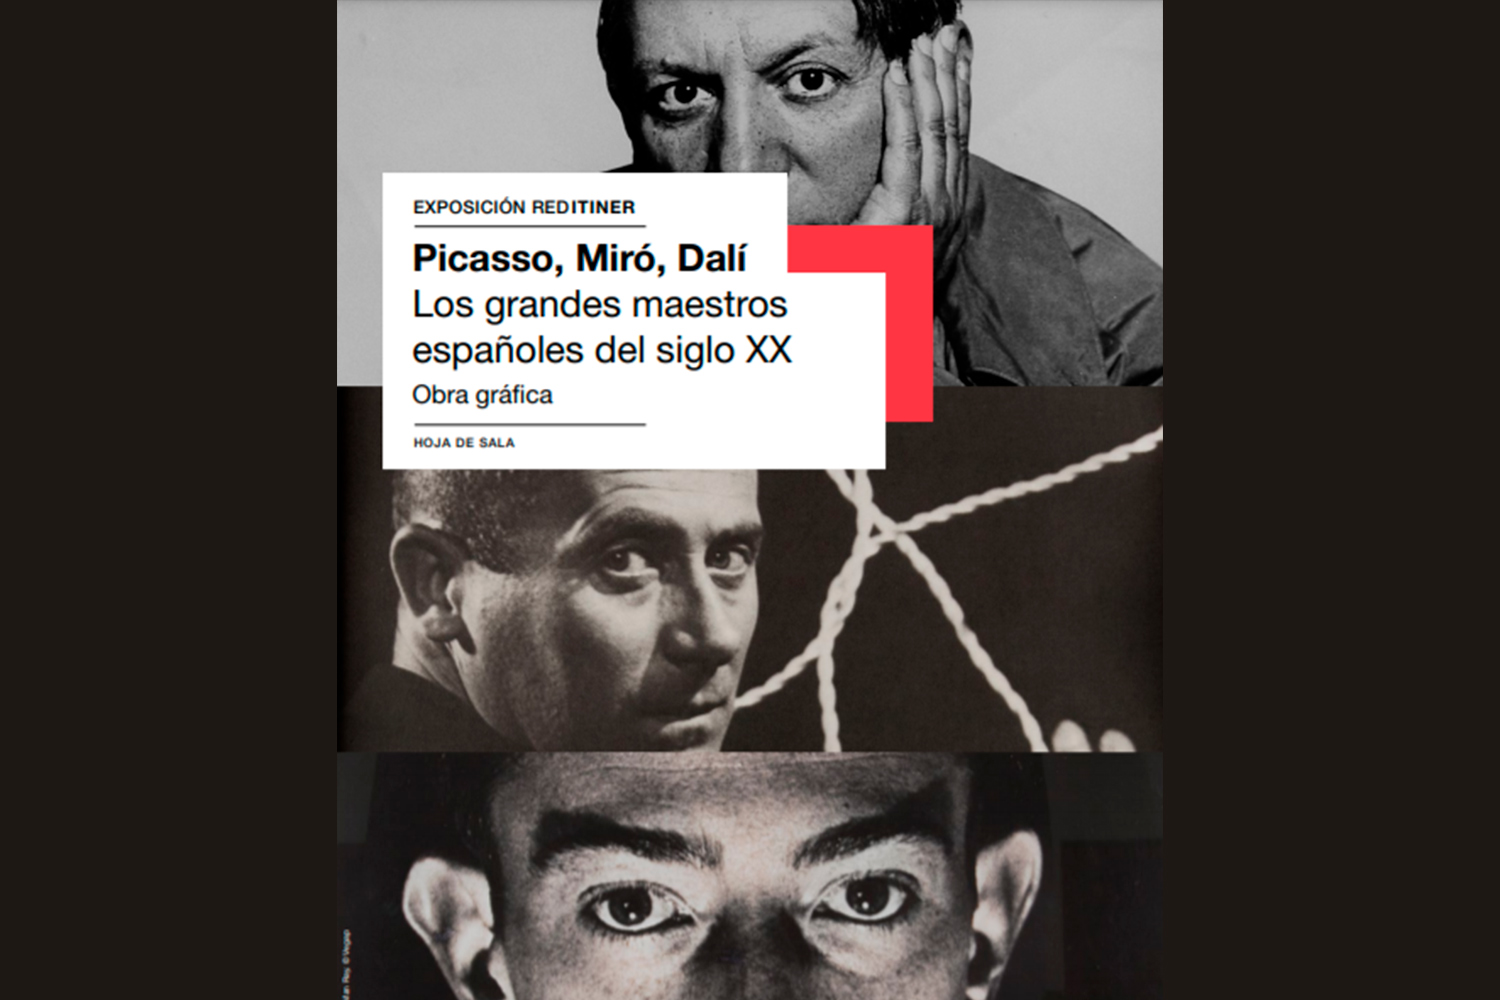 Cartel Exposición “Picasso, Miró, Dalí. Grandes maestros del siglo XX”